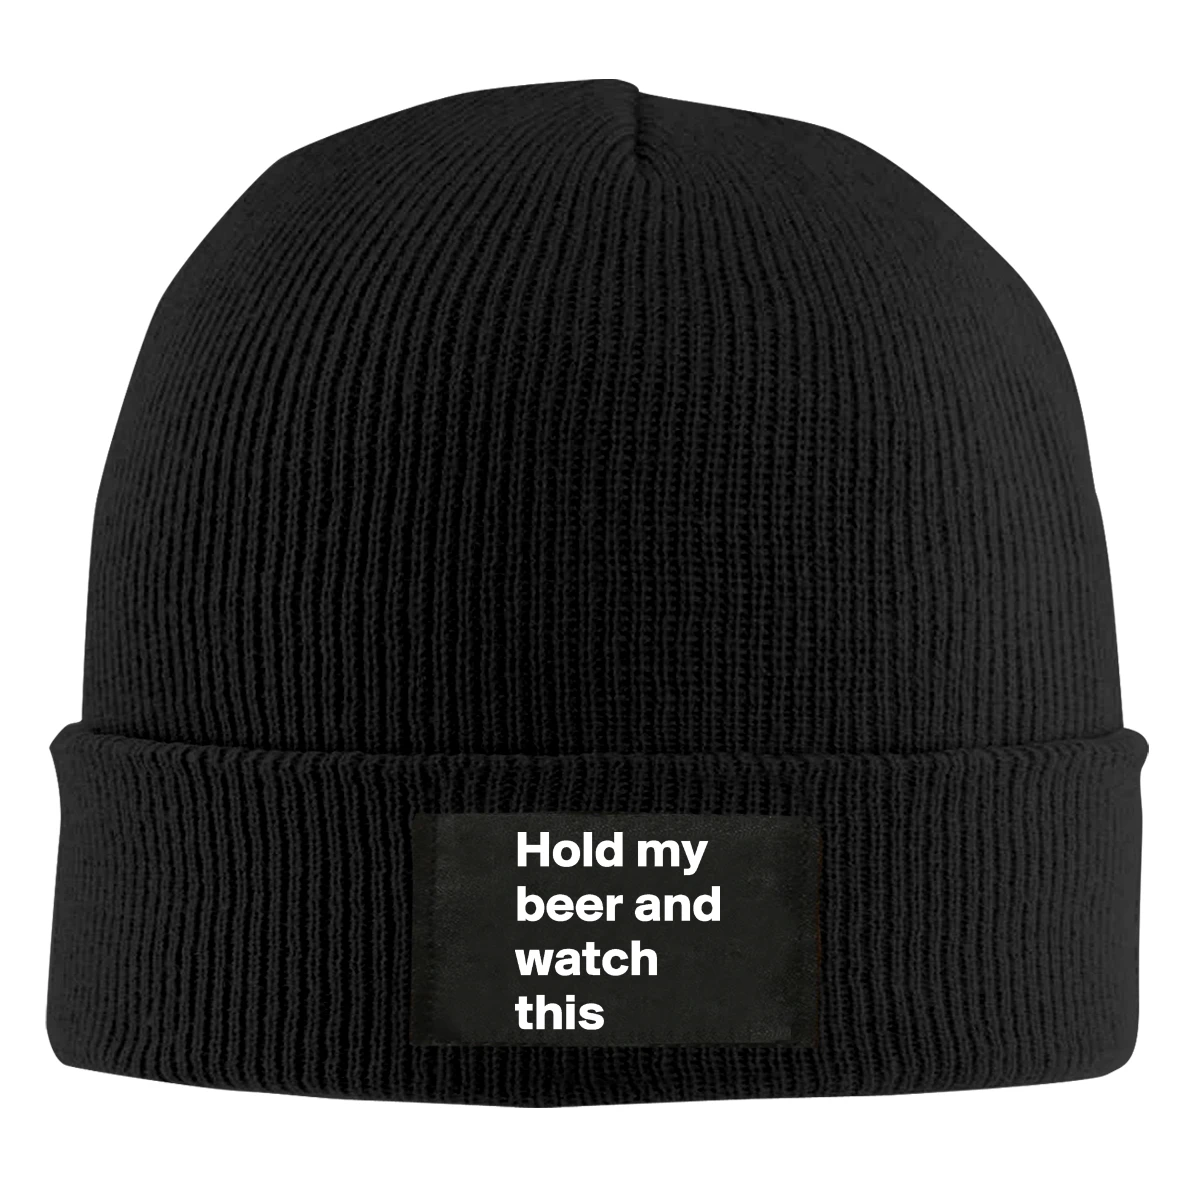 

Держите мое пиво и смотрите эту облегающую шапку с дизайном зимней детской шапки с черепом